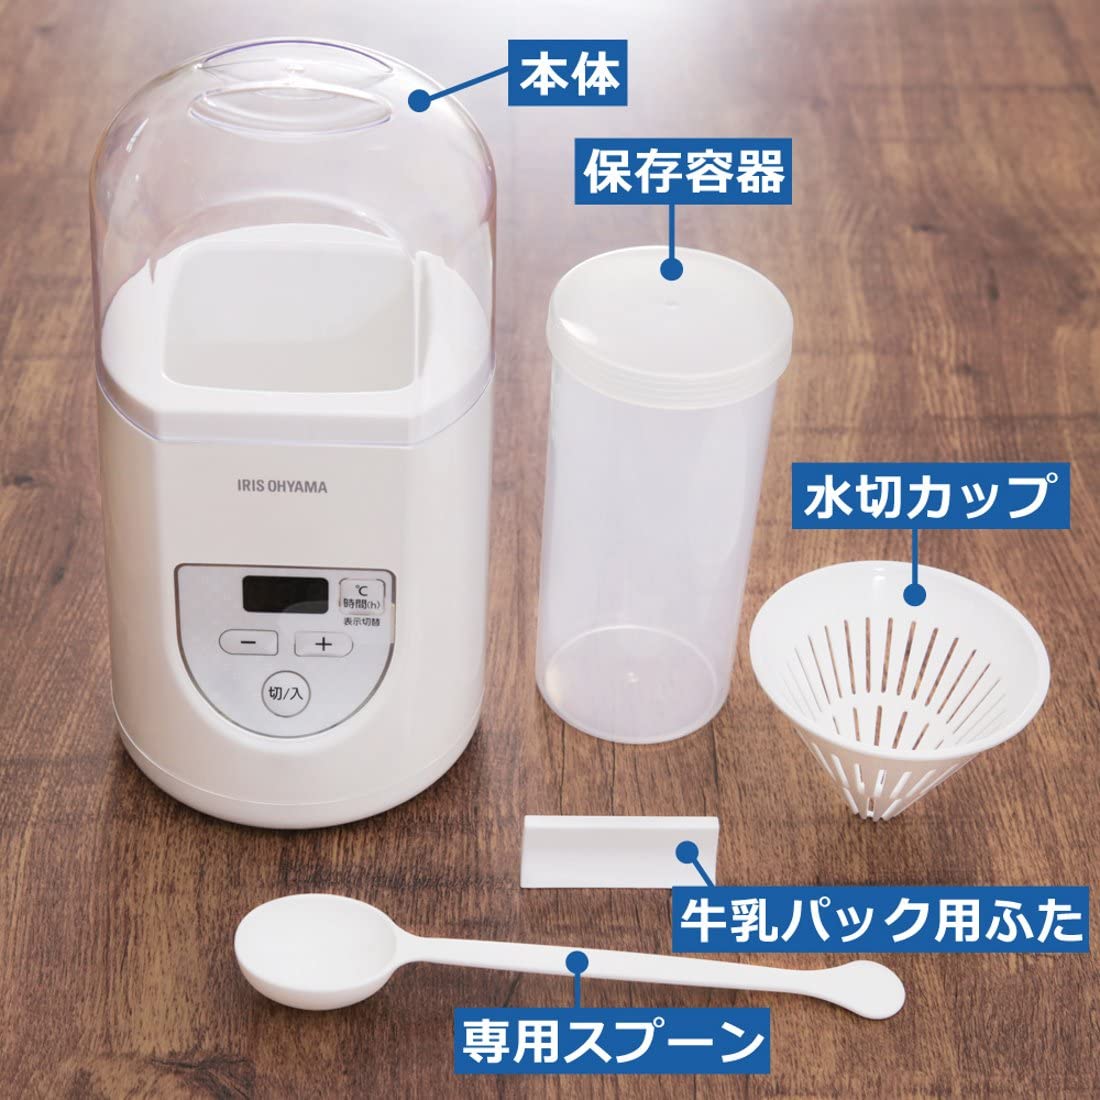 Japans Household Products Maker Iris Ohyama Foto de stock de